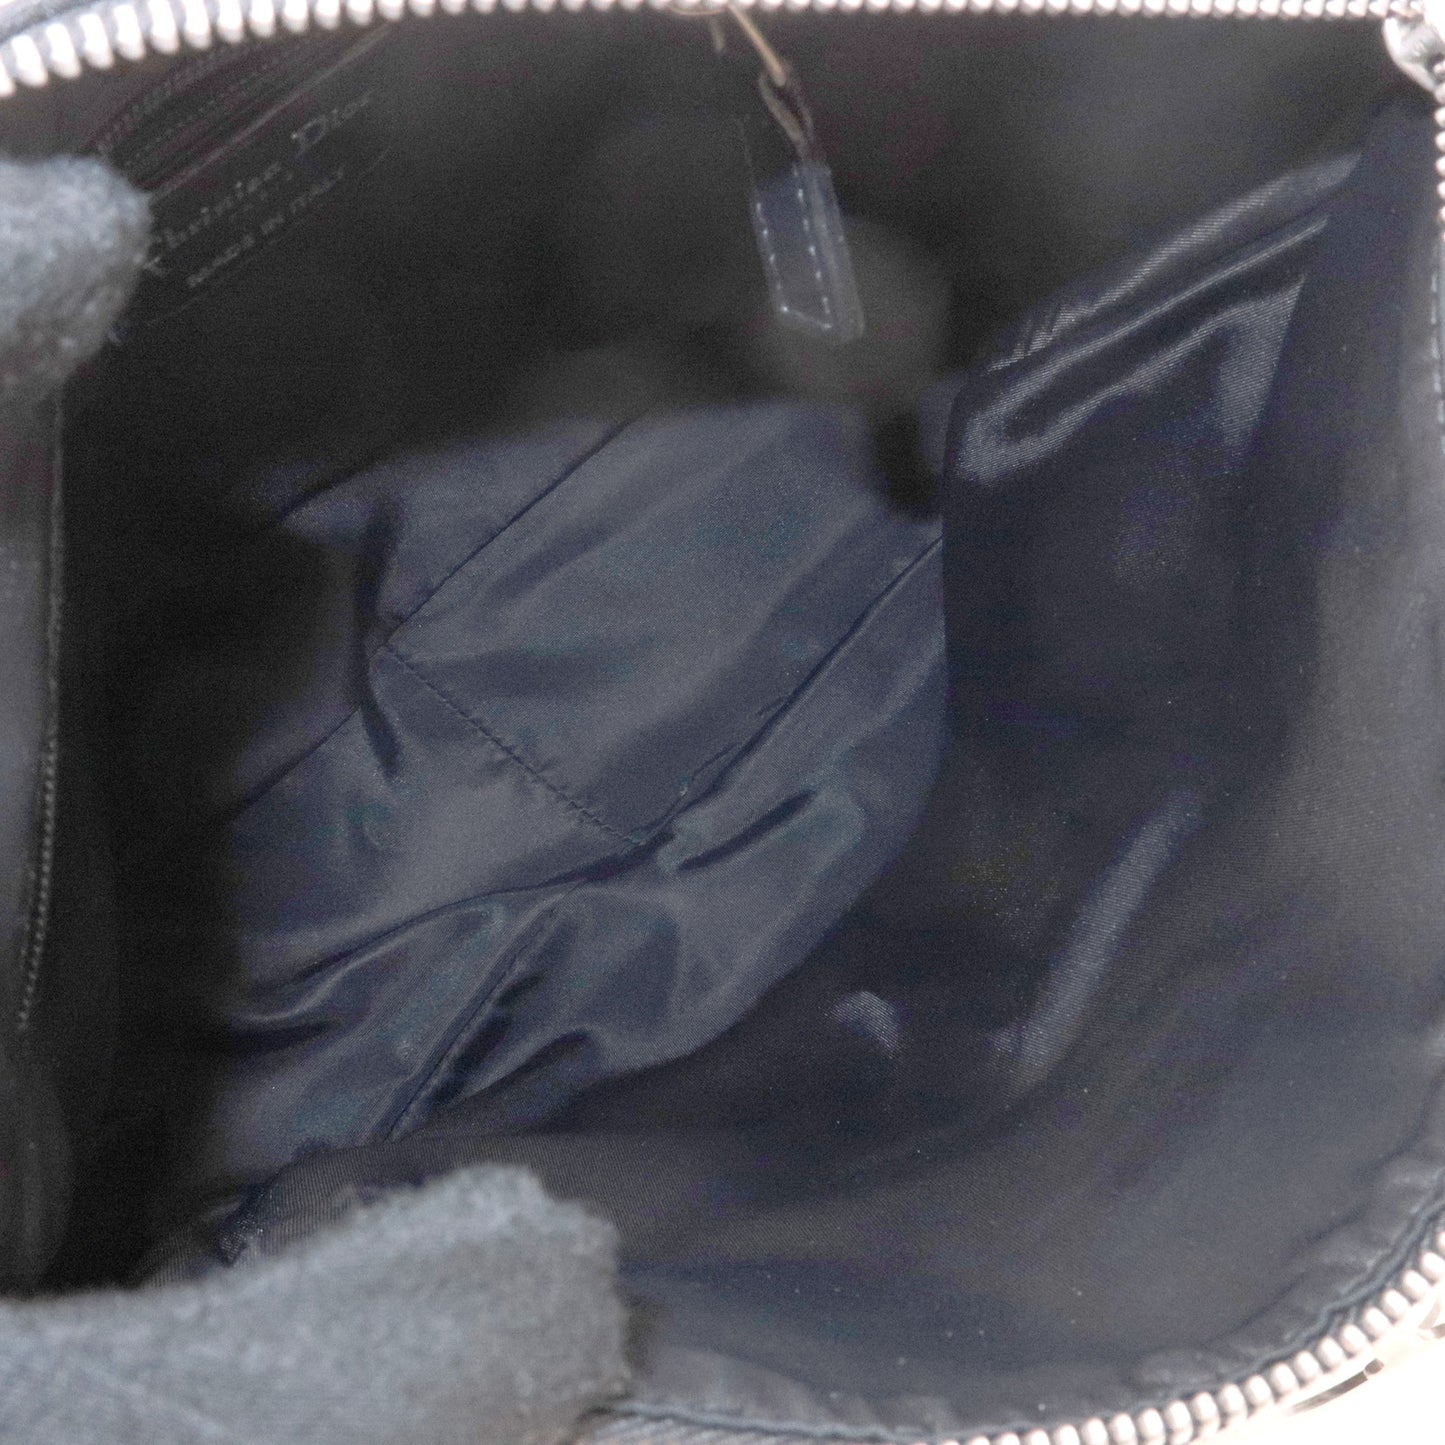 Christian Dior Lovely Canvas Leather Shoulder Bag Black